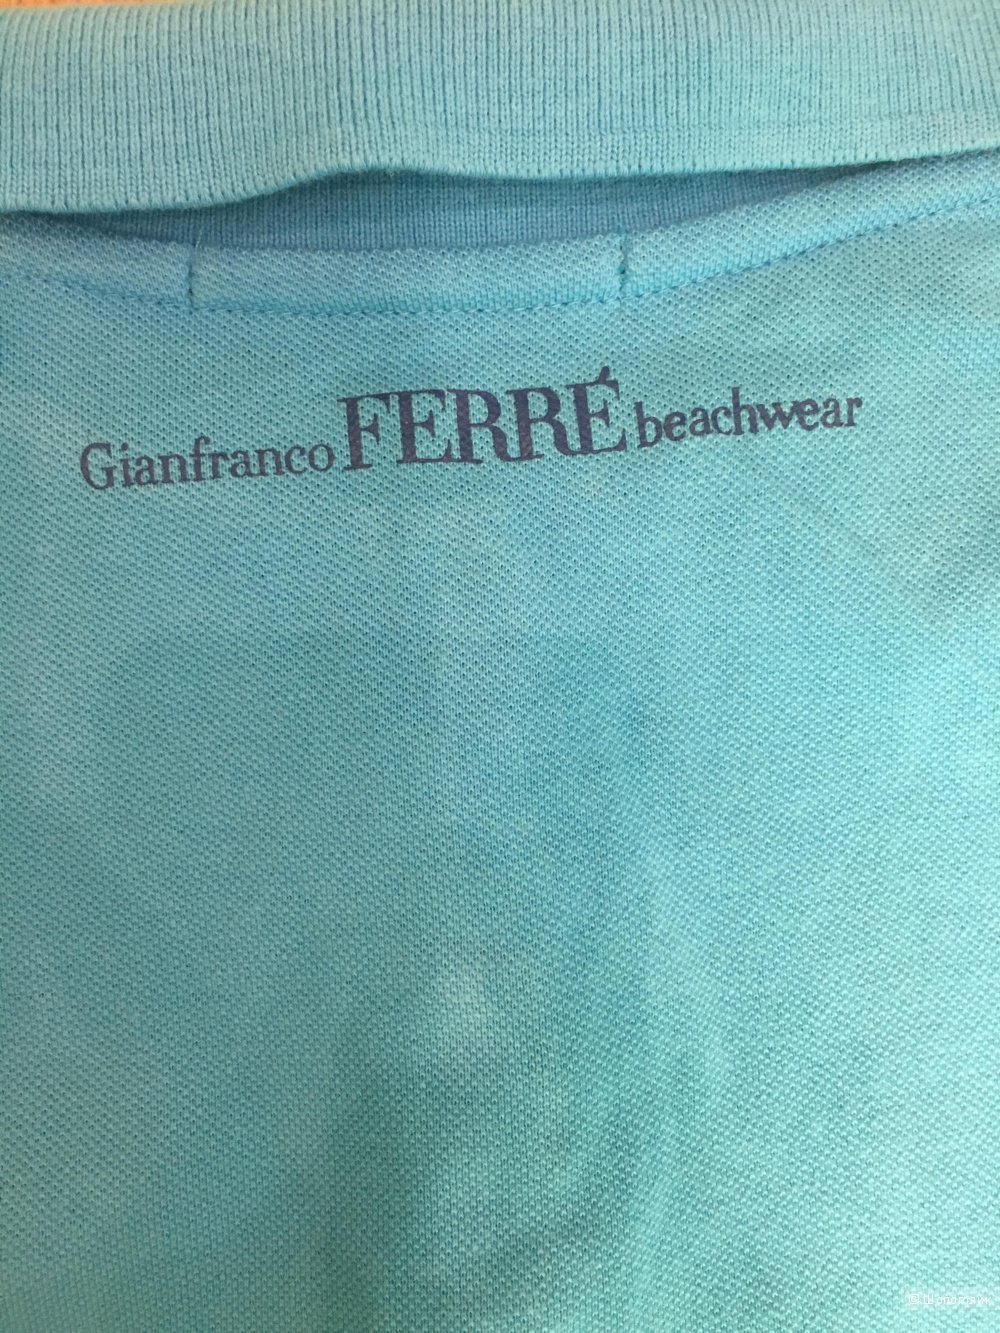 Поло Gianfranco Ferre beachwear,размер S